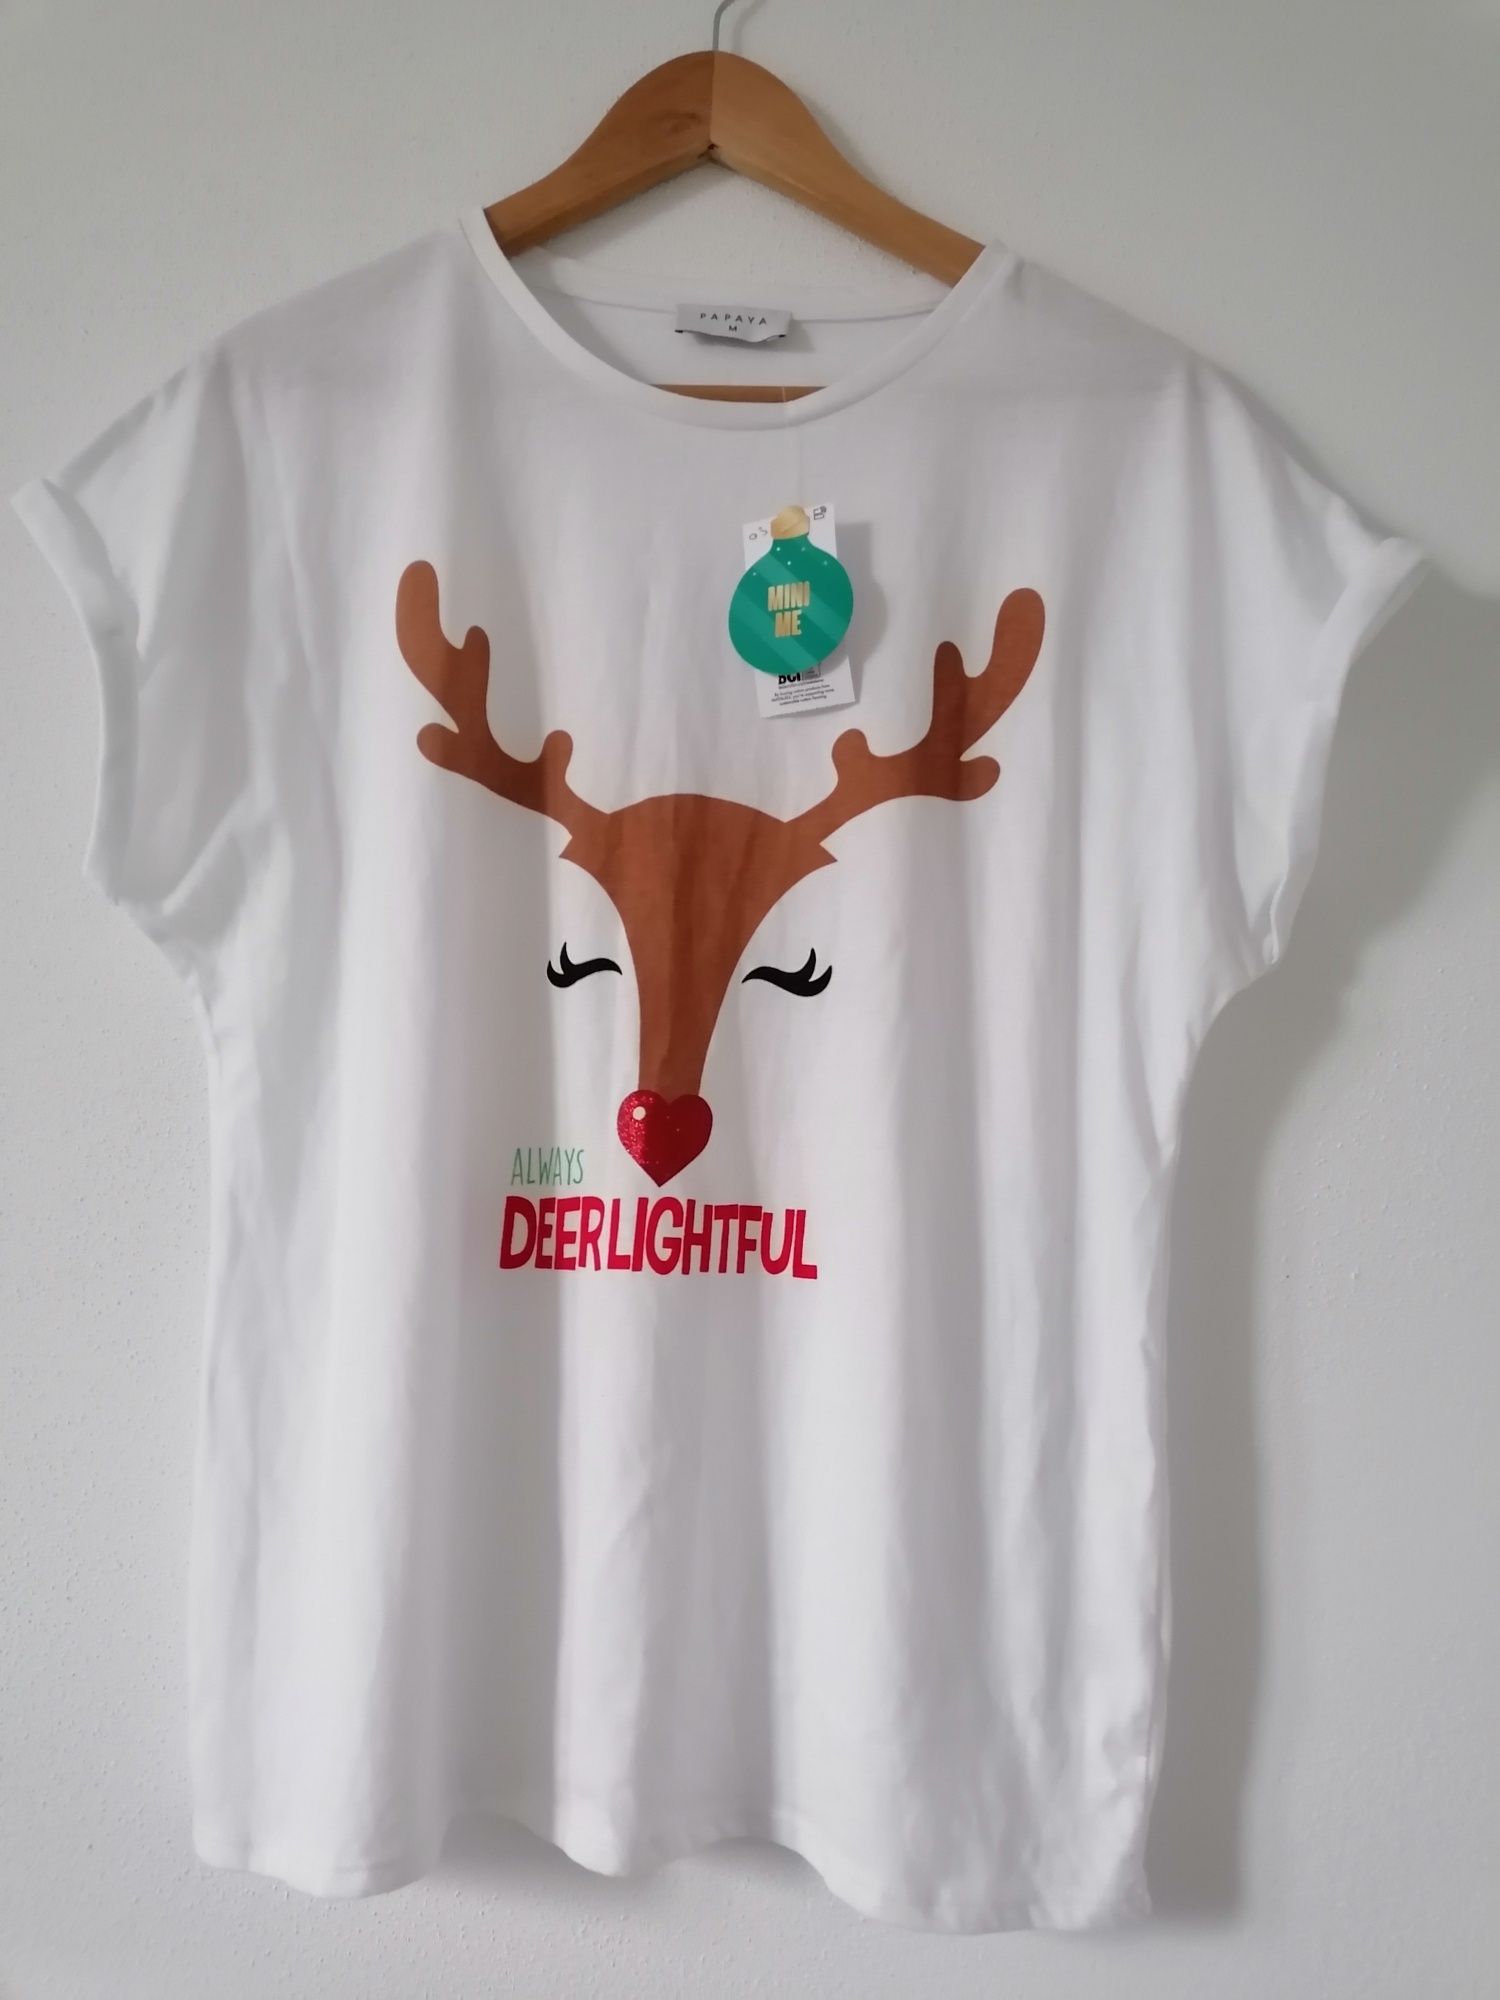 Koszulka T-shirt świąteczna nowa Papaya renifer M 38 10